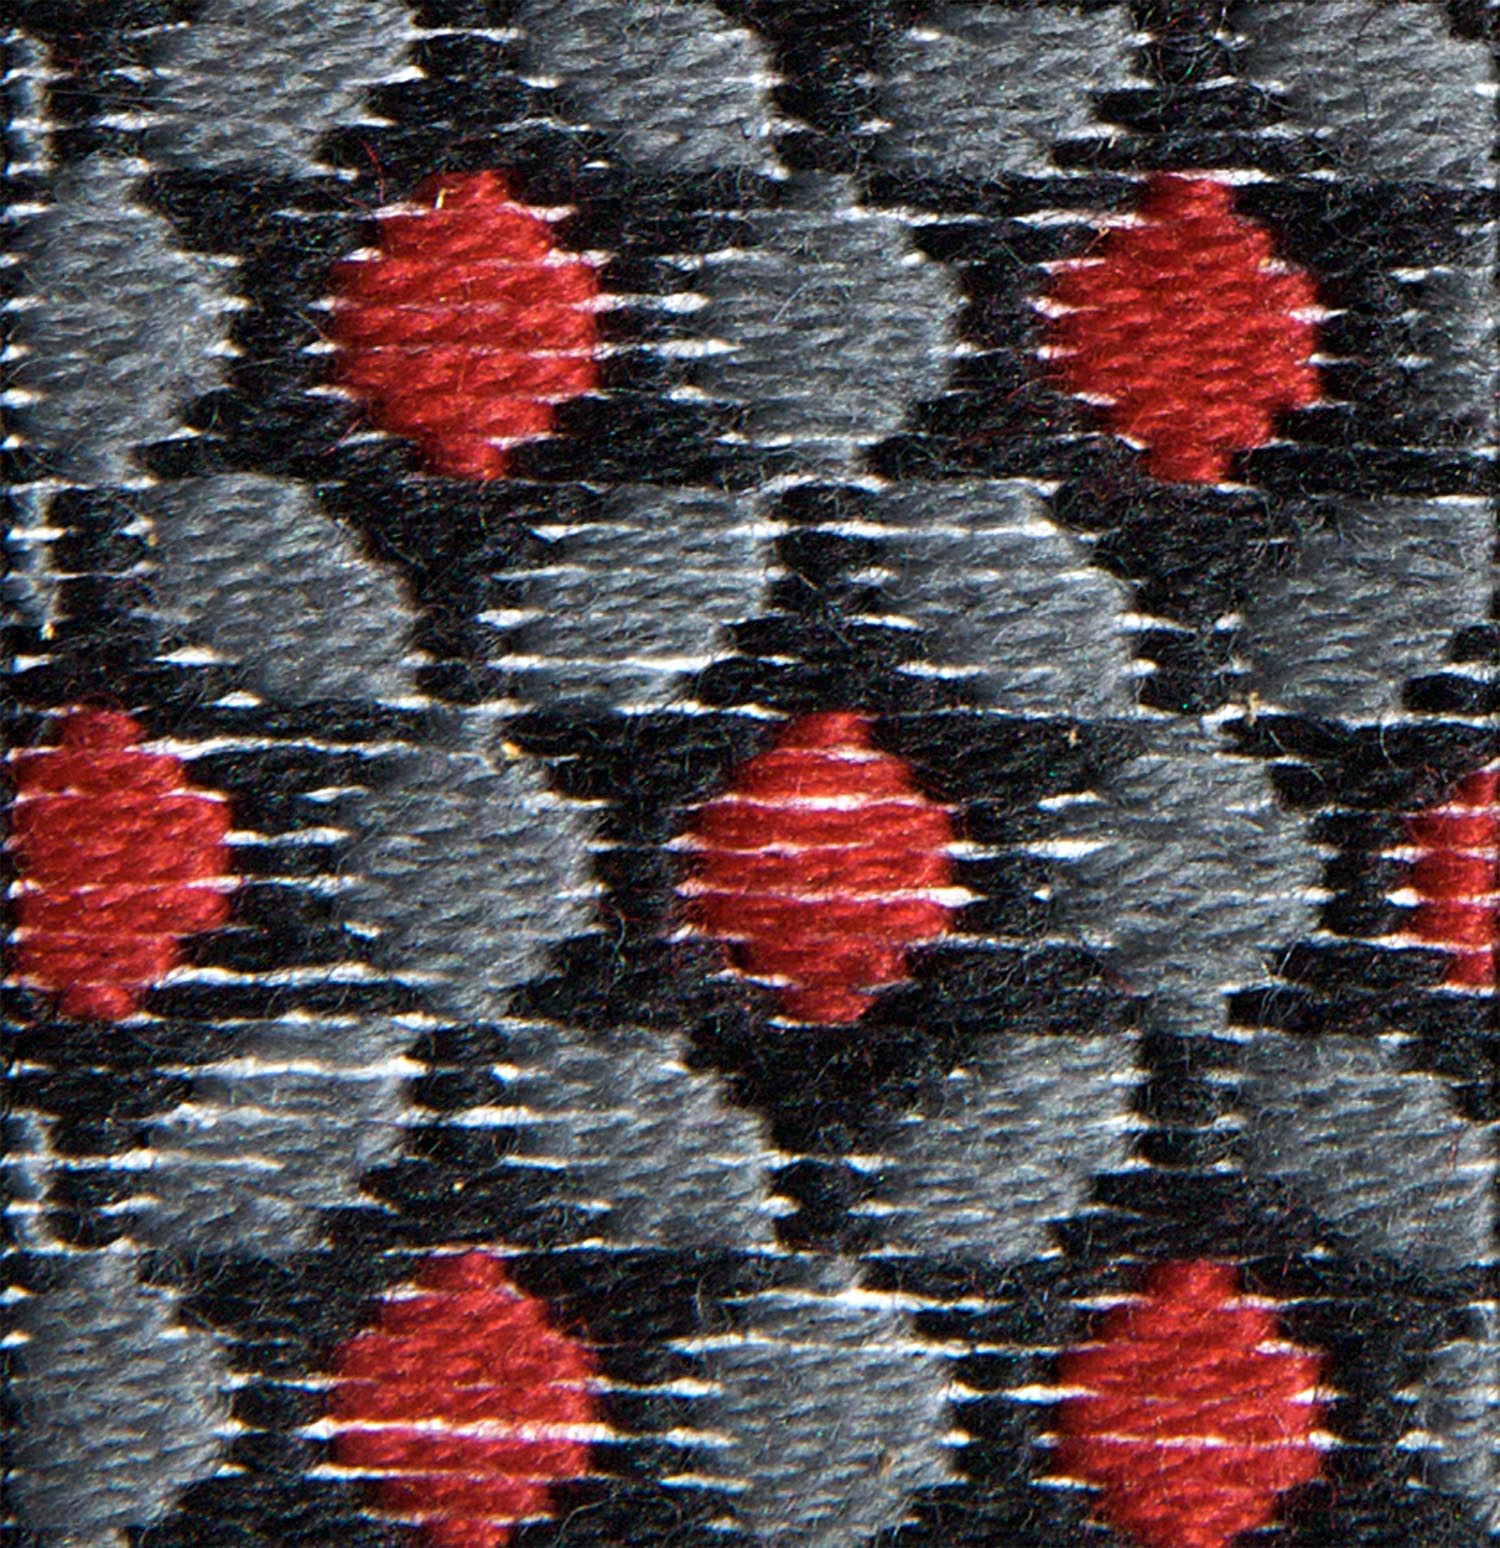 Stitch 67 - Three Leafed Clover — Wonderful Stitches